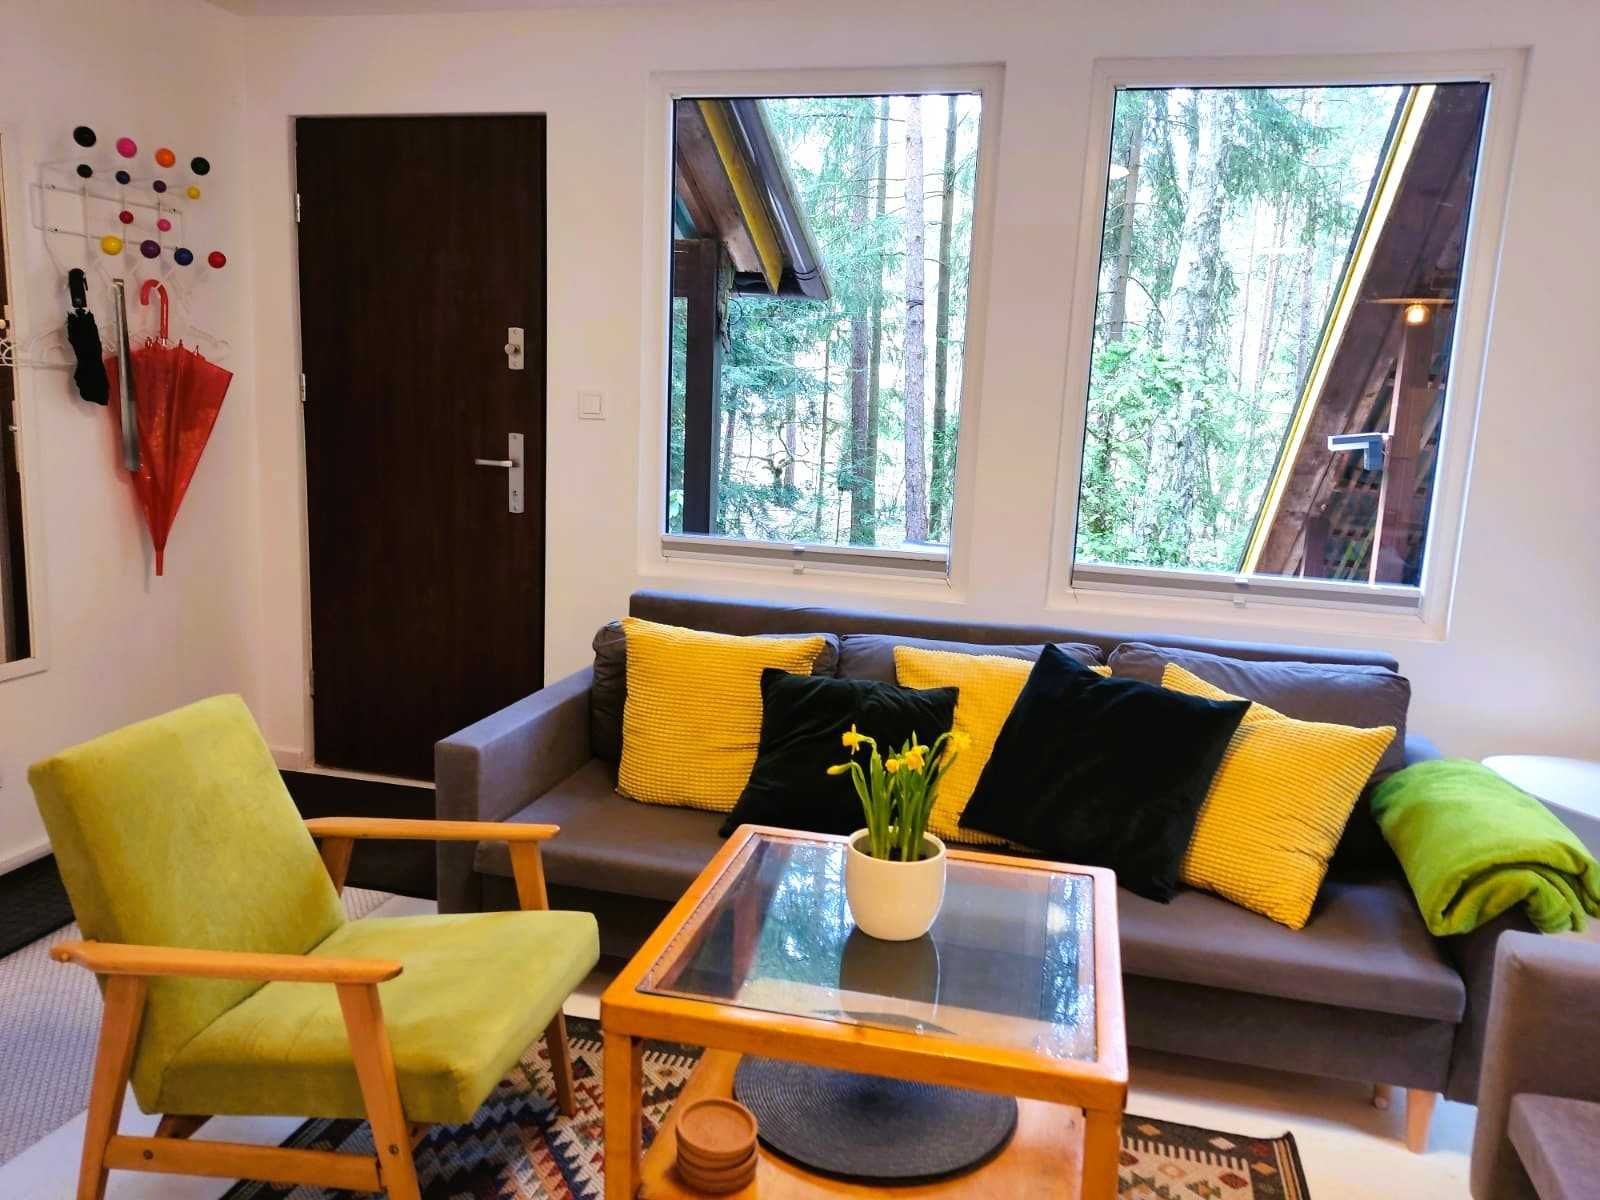 Urokliwy, kameralny całoroczny dom gościnny w lesie niedaleko Warszawy